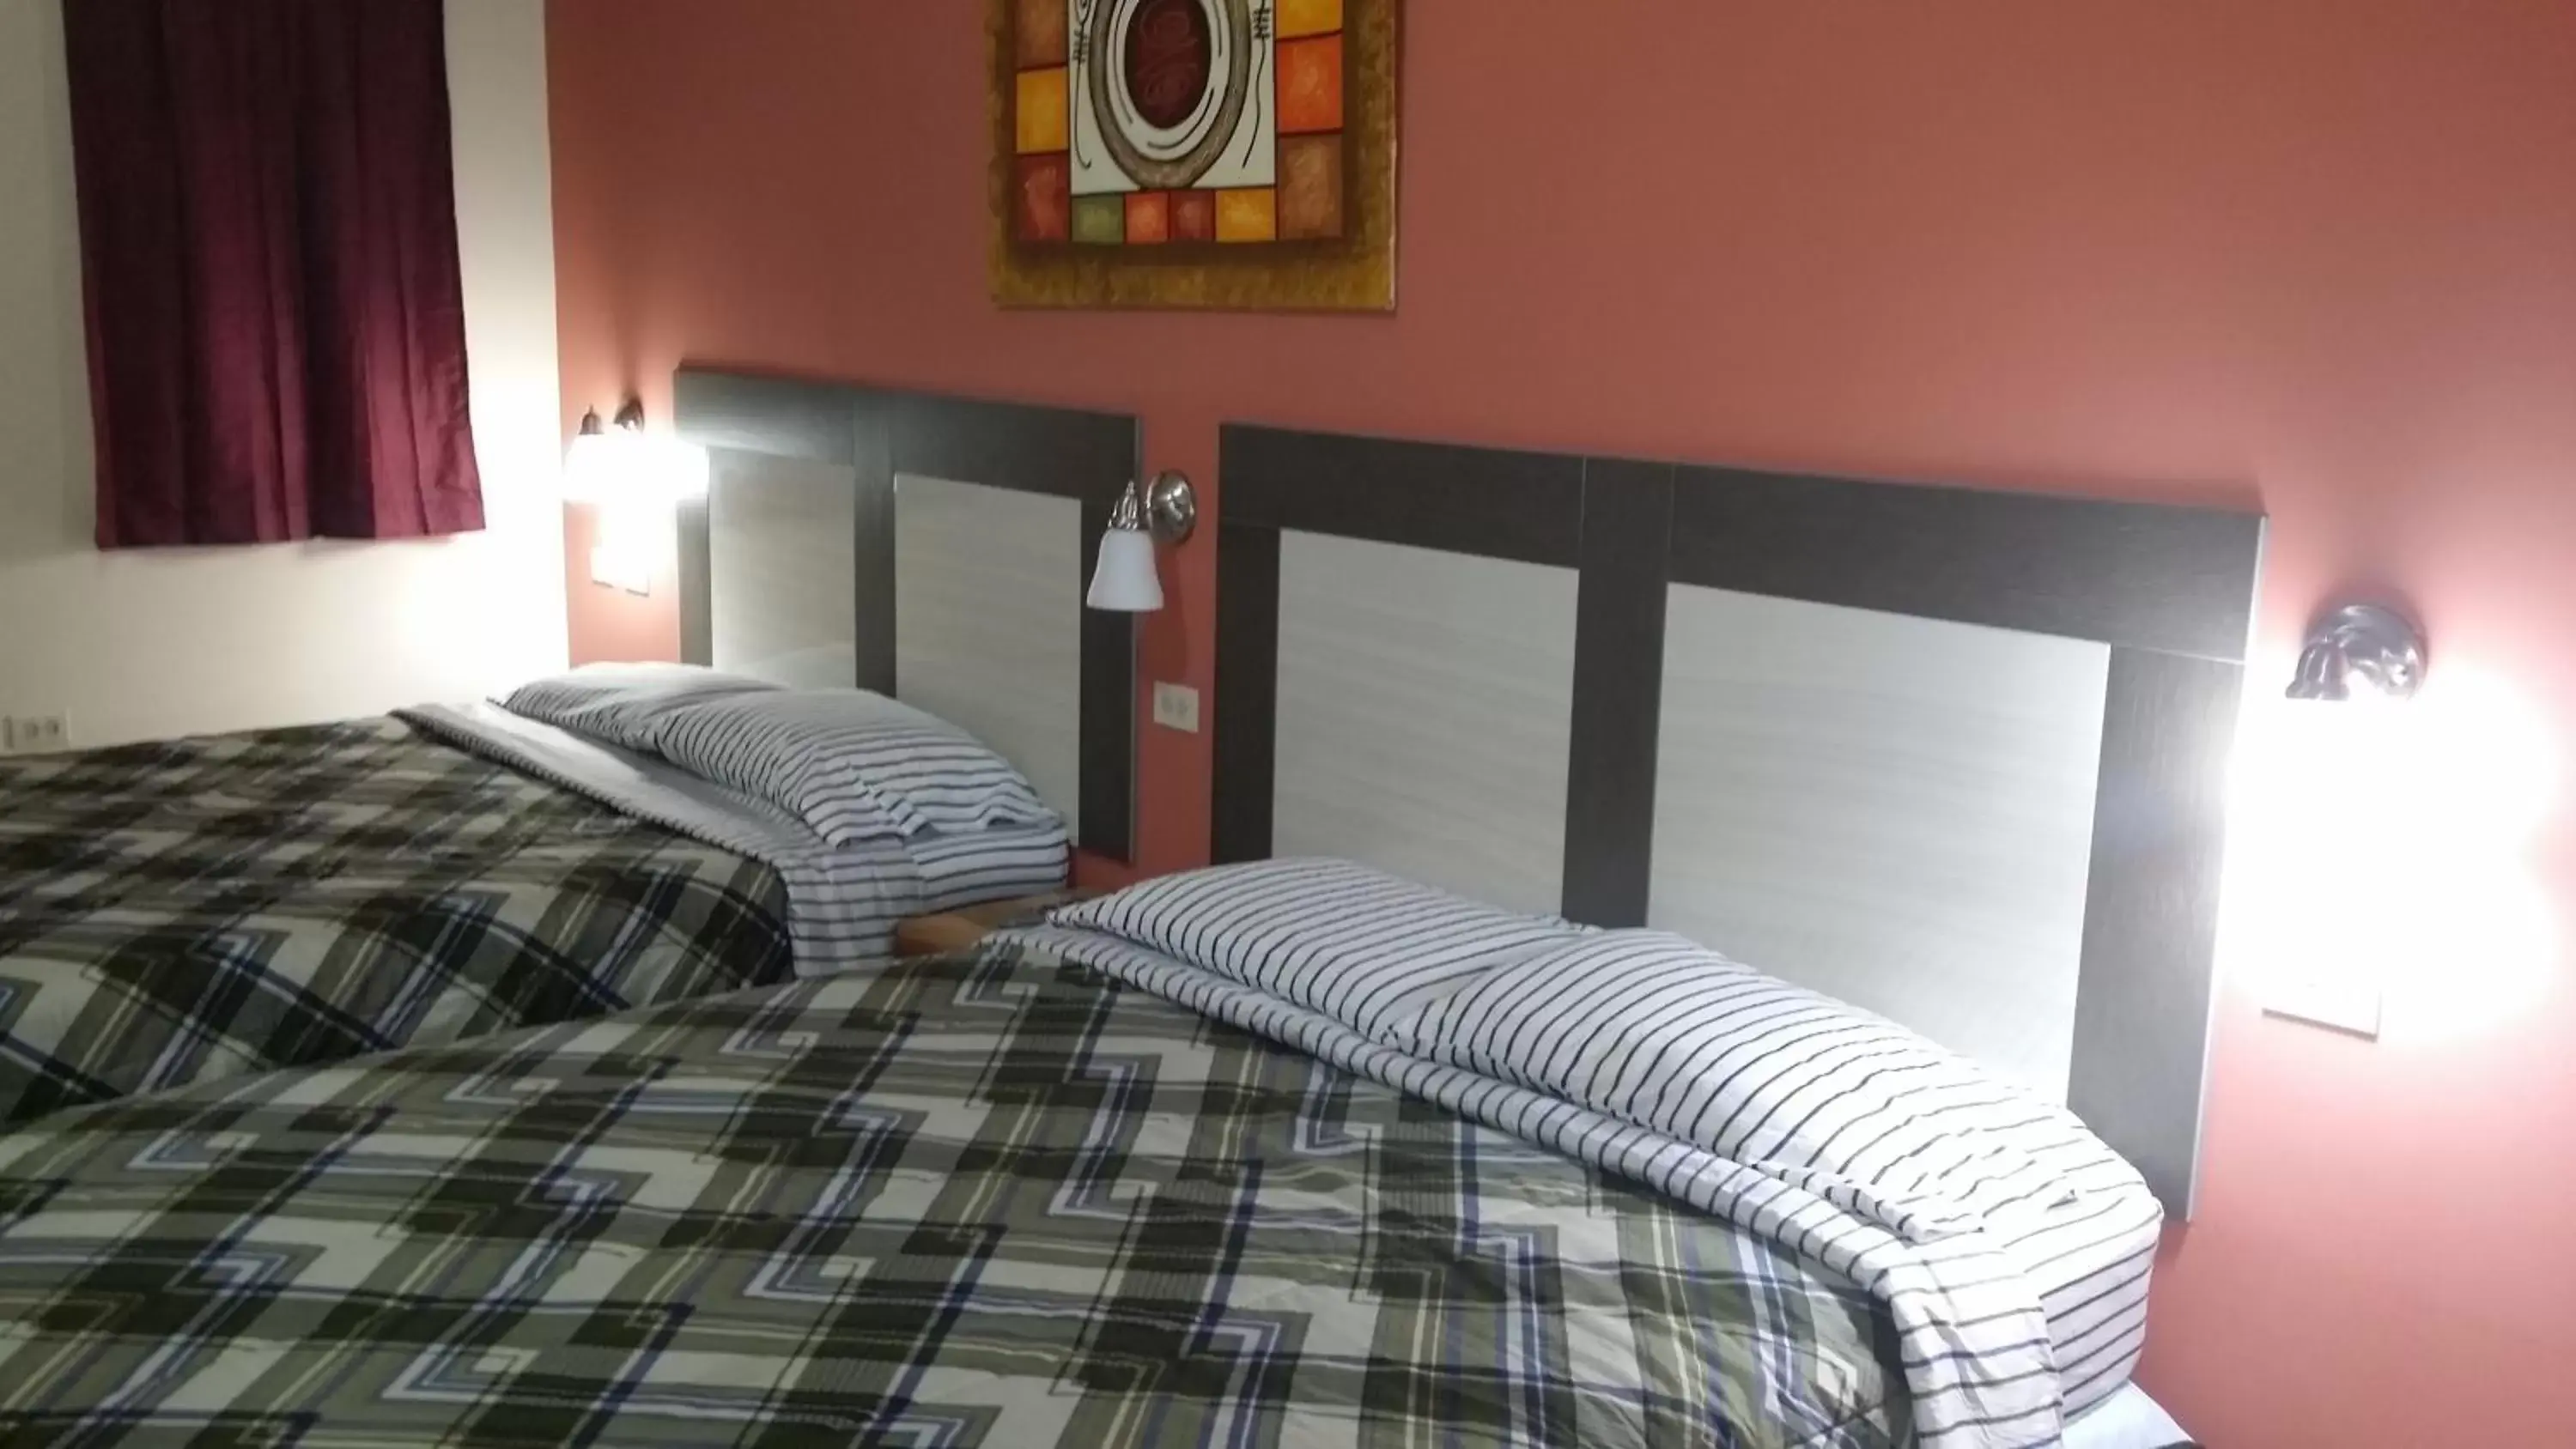 Bedroom, Bed in Dreams Hotel Puerto Rico